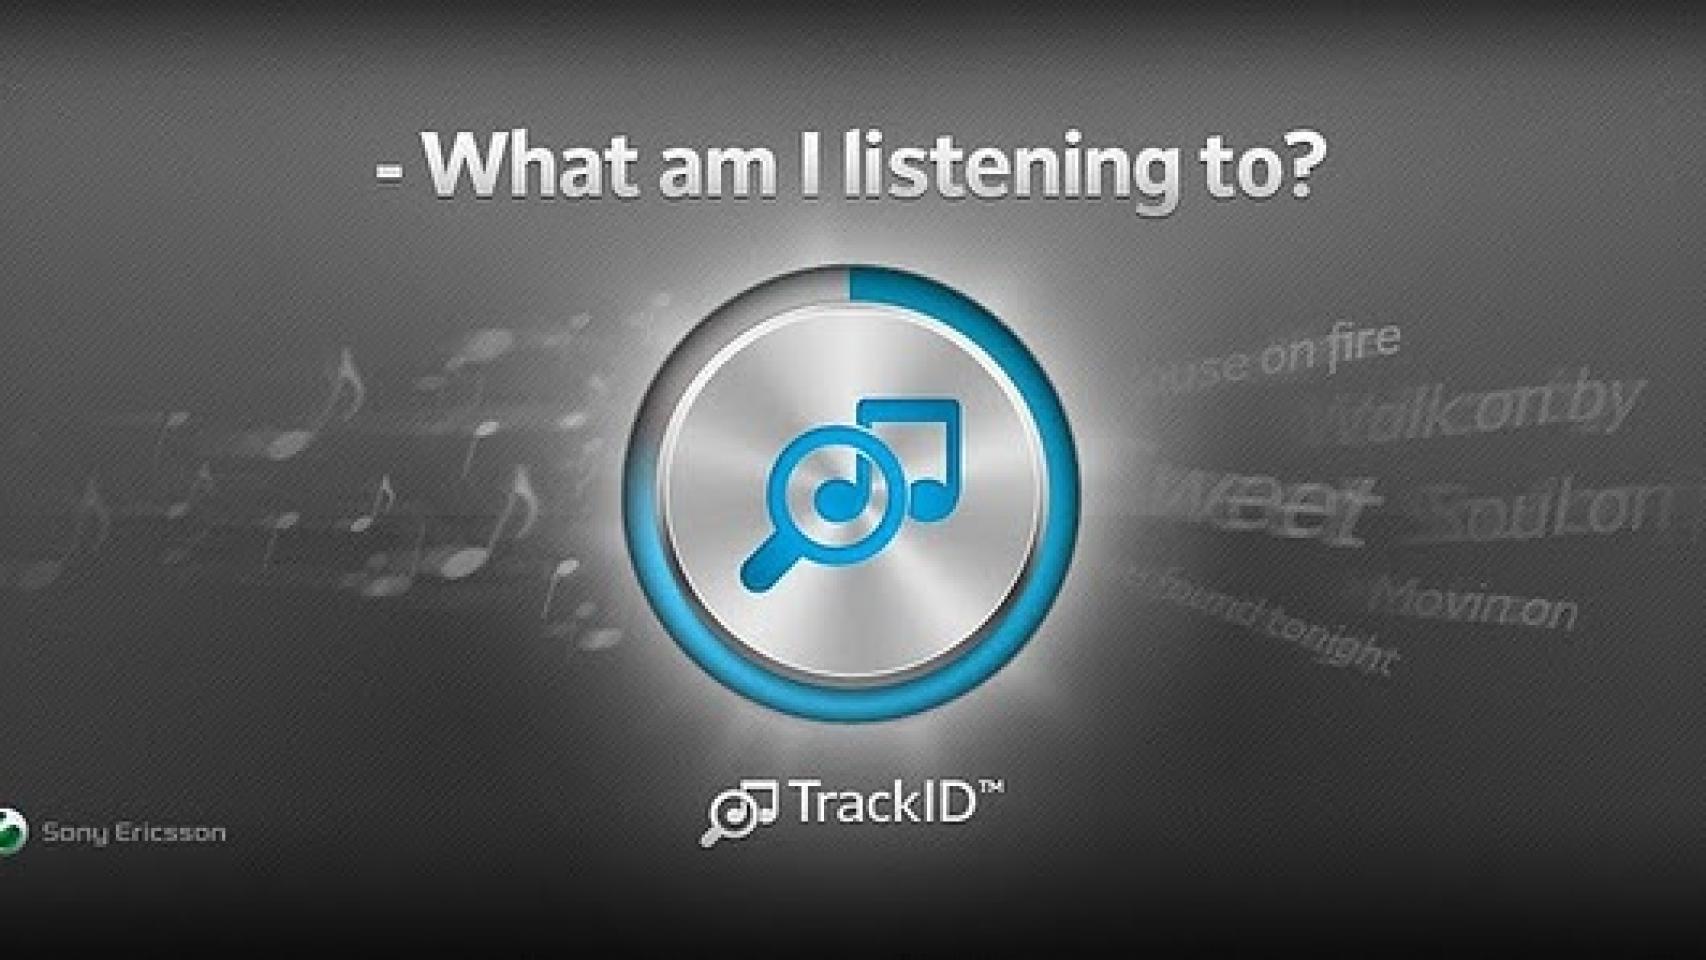 Sony Ericsson lanza su propia app de reconocimiento musical TrackID